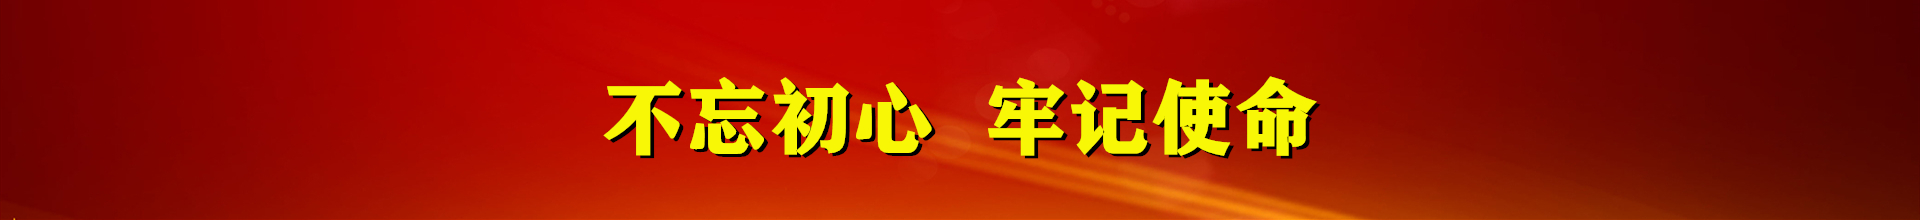 凯时K66|凯时K66(中国)手机版app_image8202